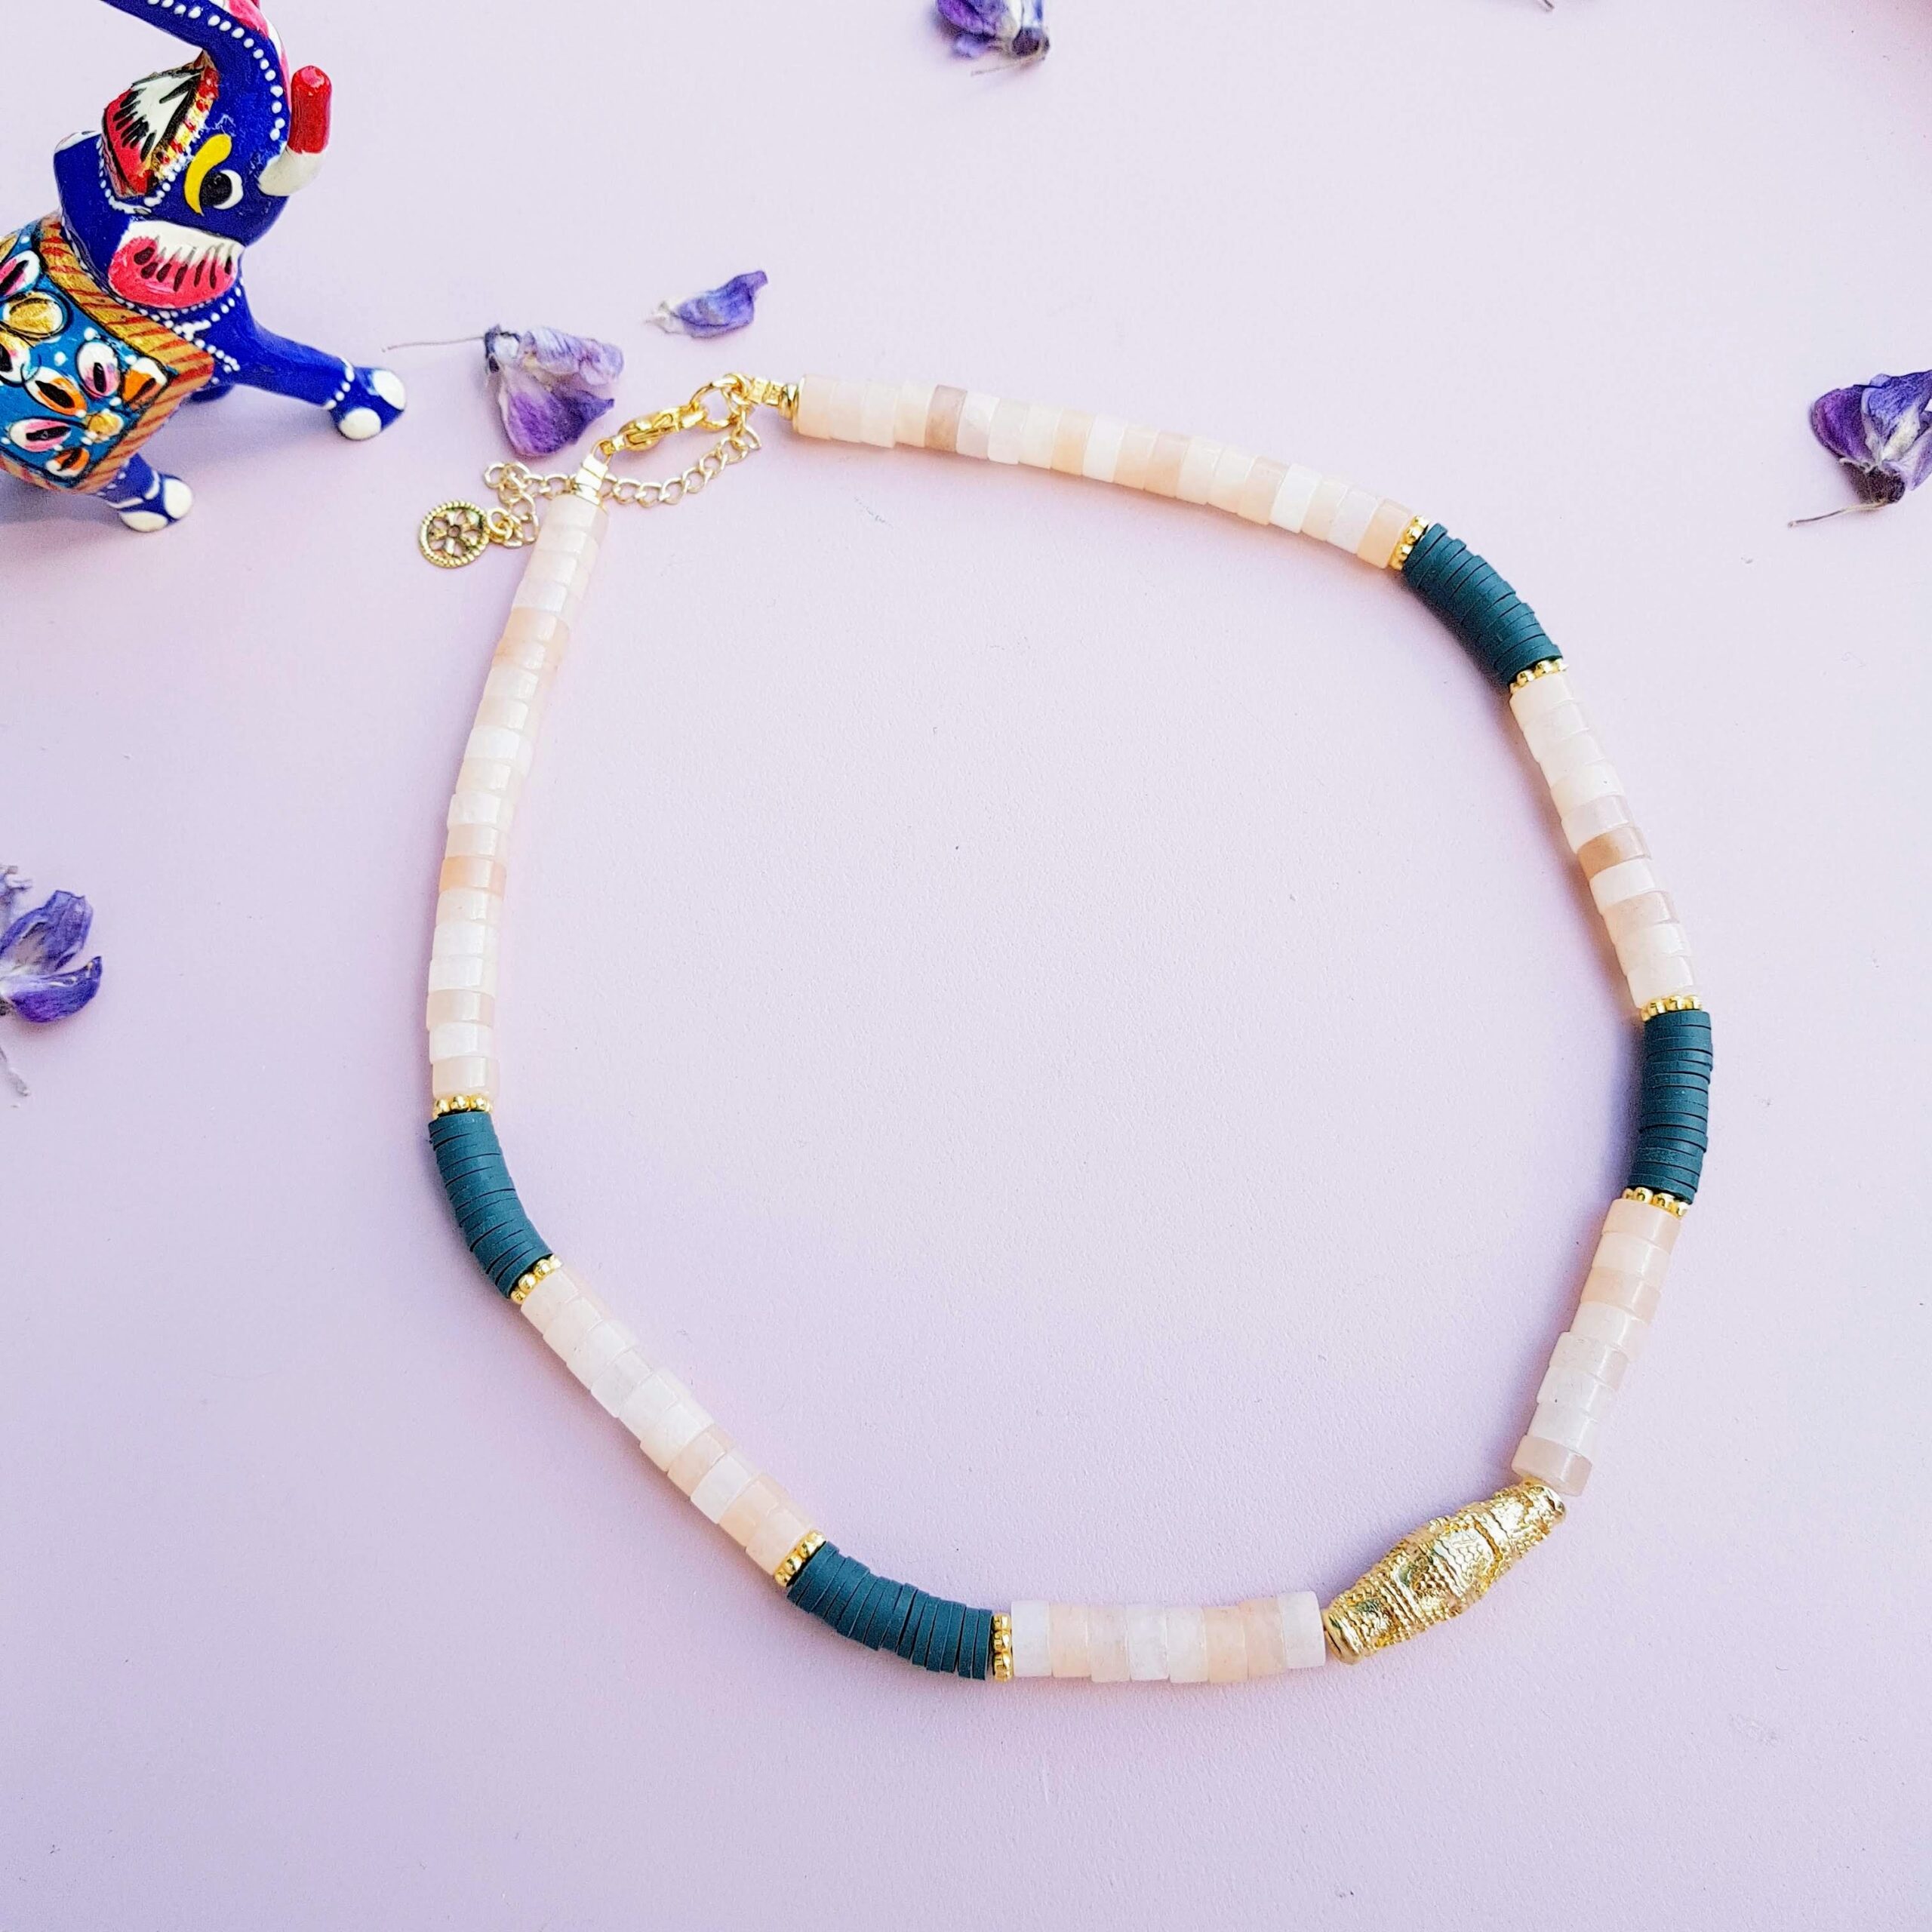 collier perles pierre de lune peach, perles heishi vert sapin, perle centrale tube doré et perles stylisées.